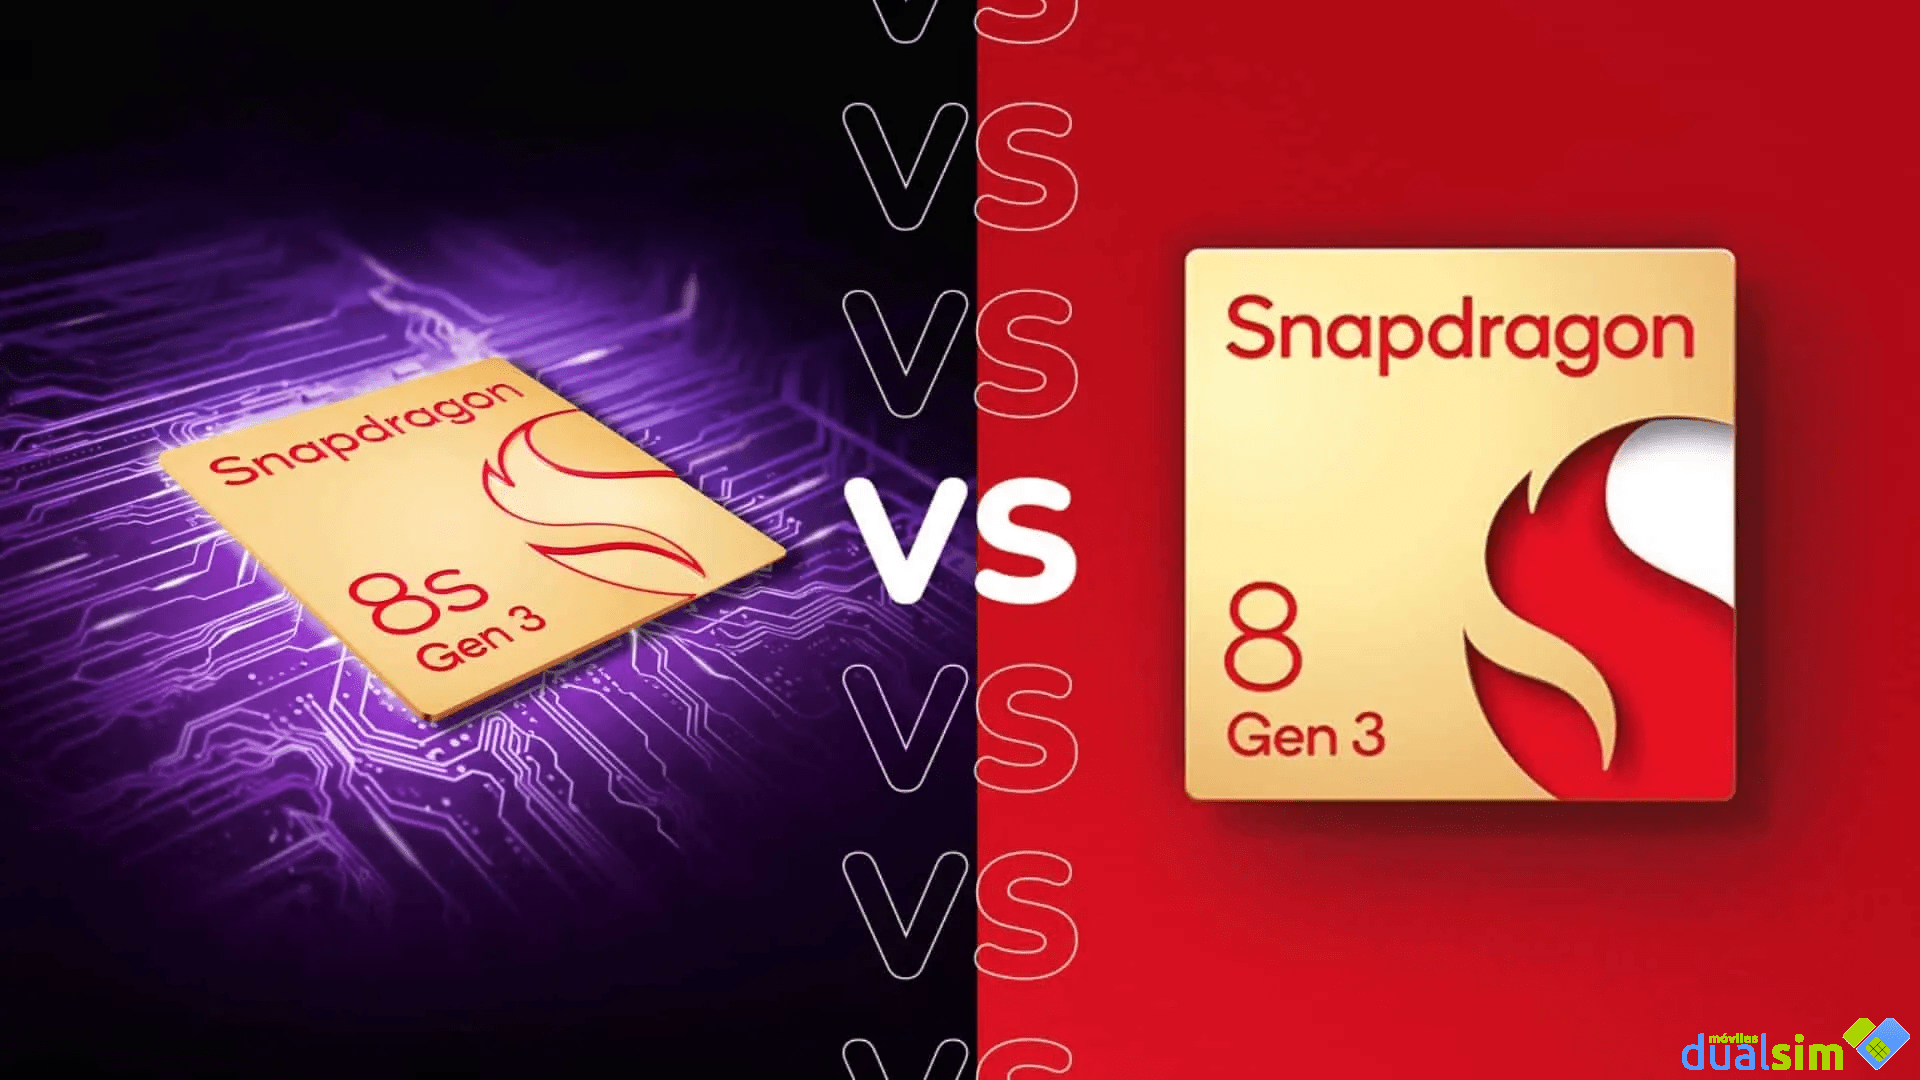 Snapdragon 8s Gen 3 vs Snapdragon 8 Gen 3: ¿En qué se diferencian y cuál es mejor?